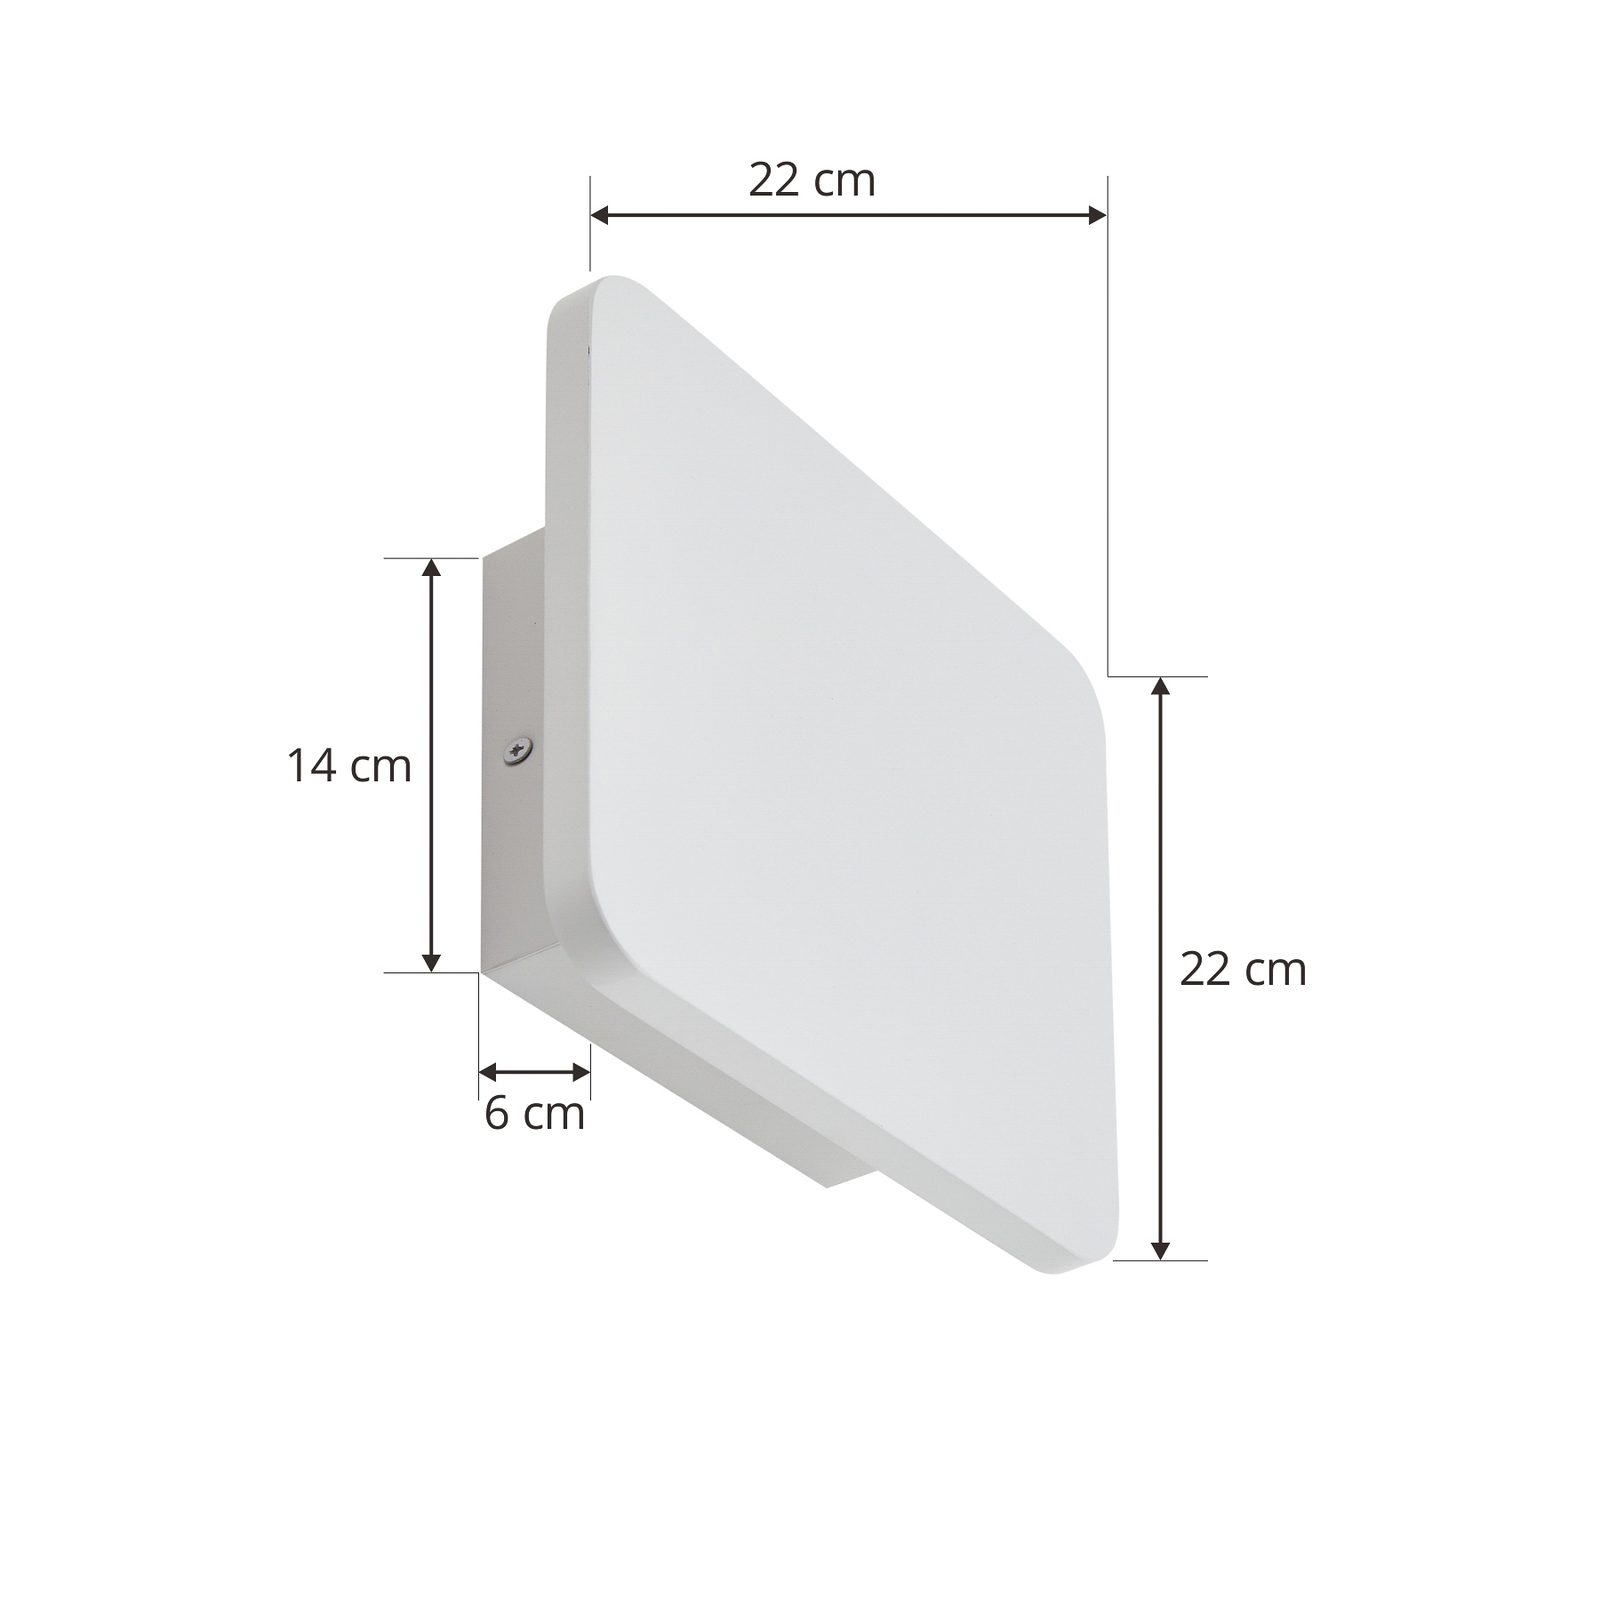 Lucande LED-Wandleuchte Elrik, weiß, 22 cm hoch, Metall